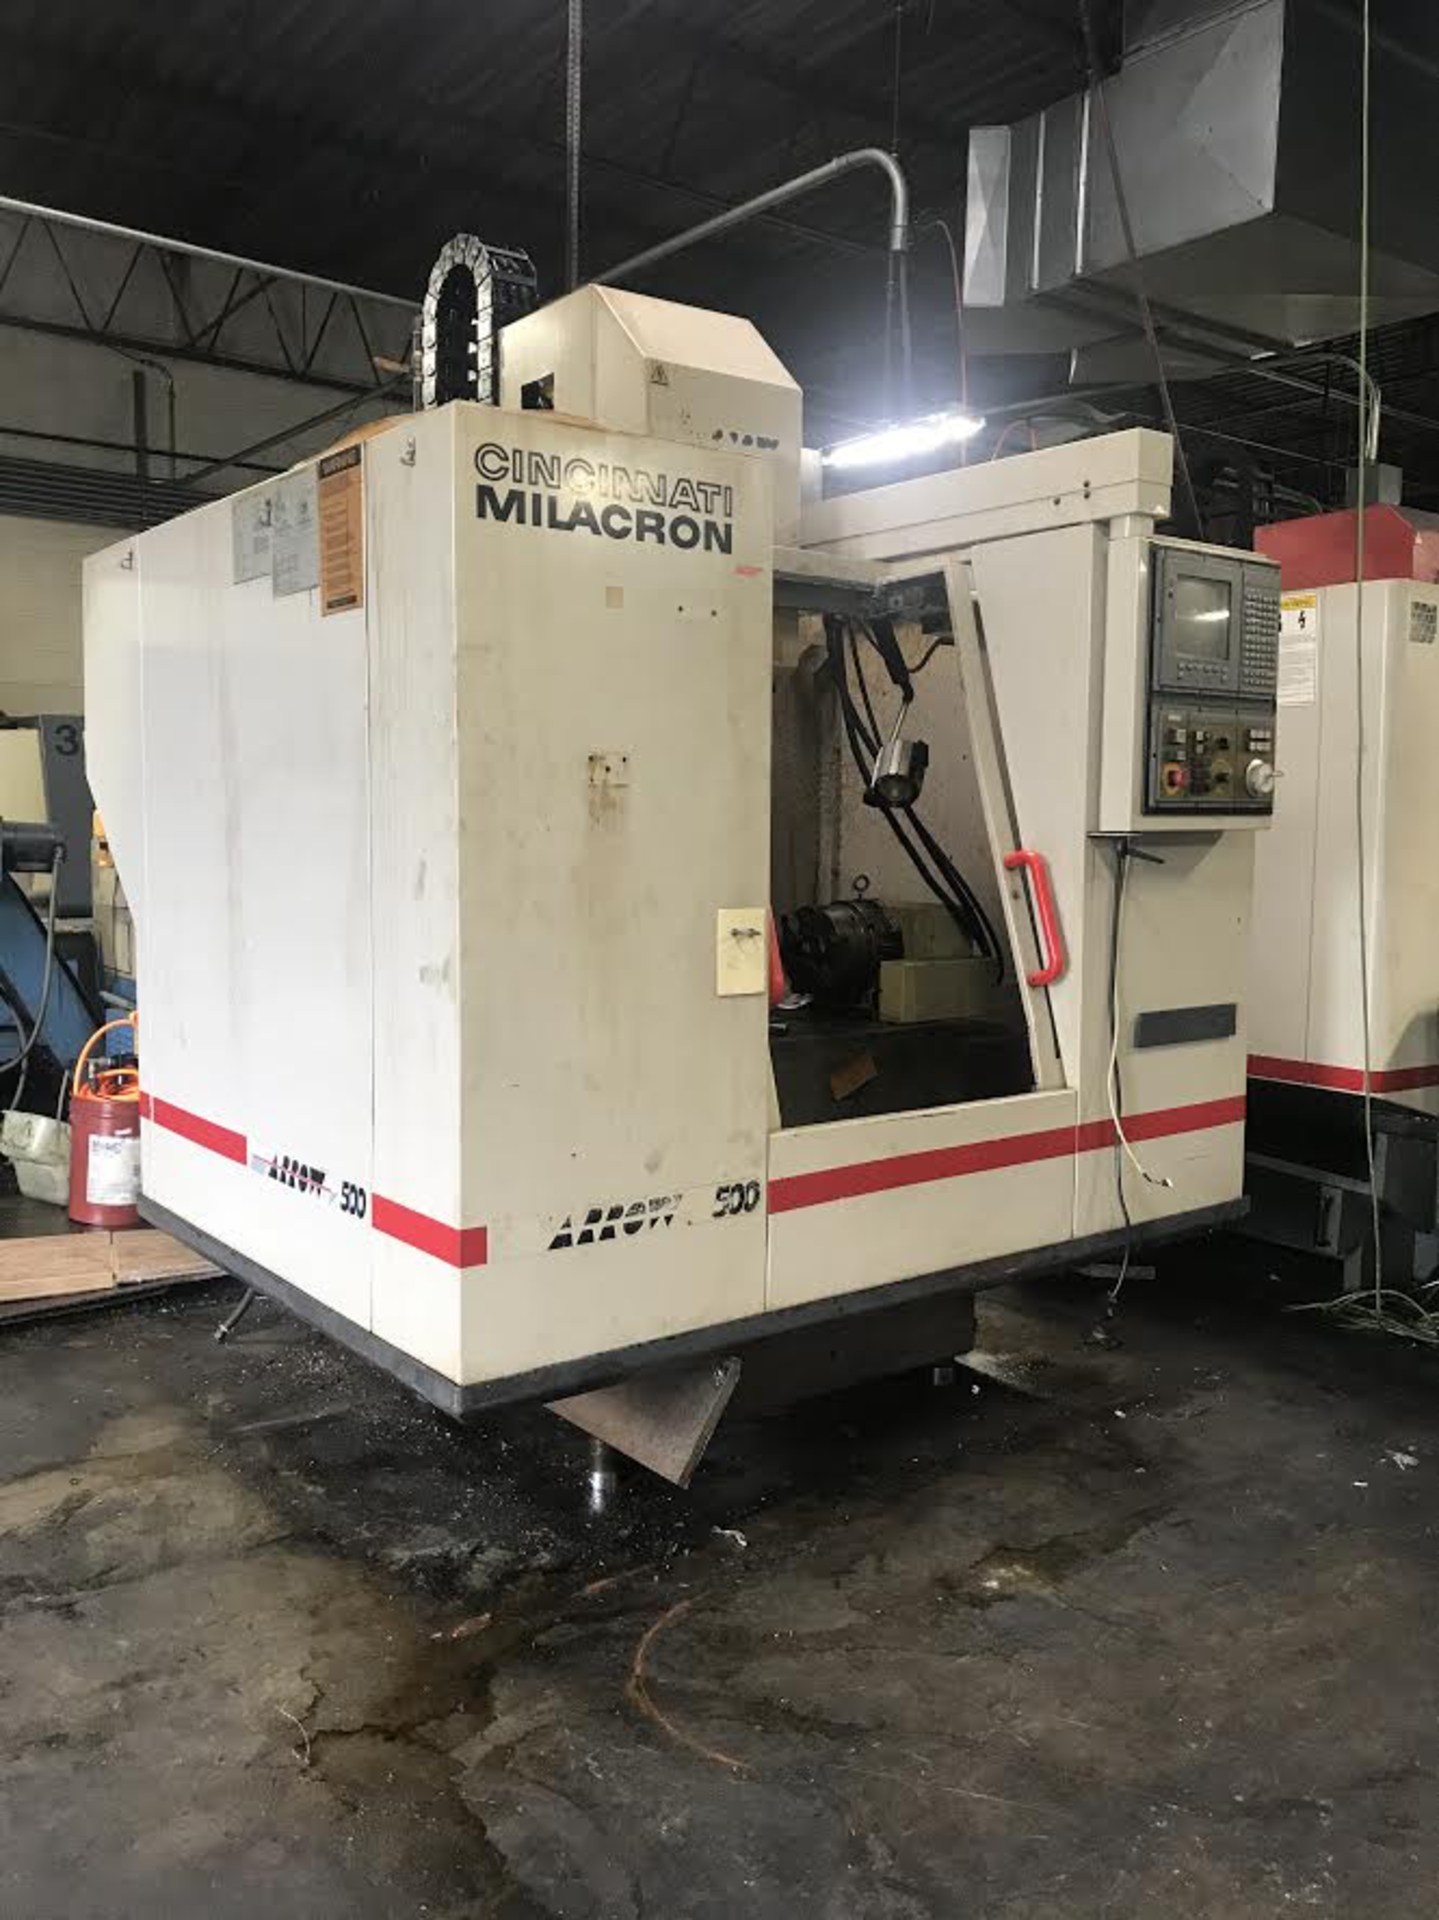 Cincinnati Milacron Arrow 500 CNC Machining Center